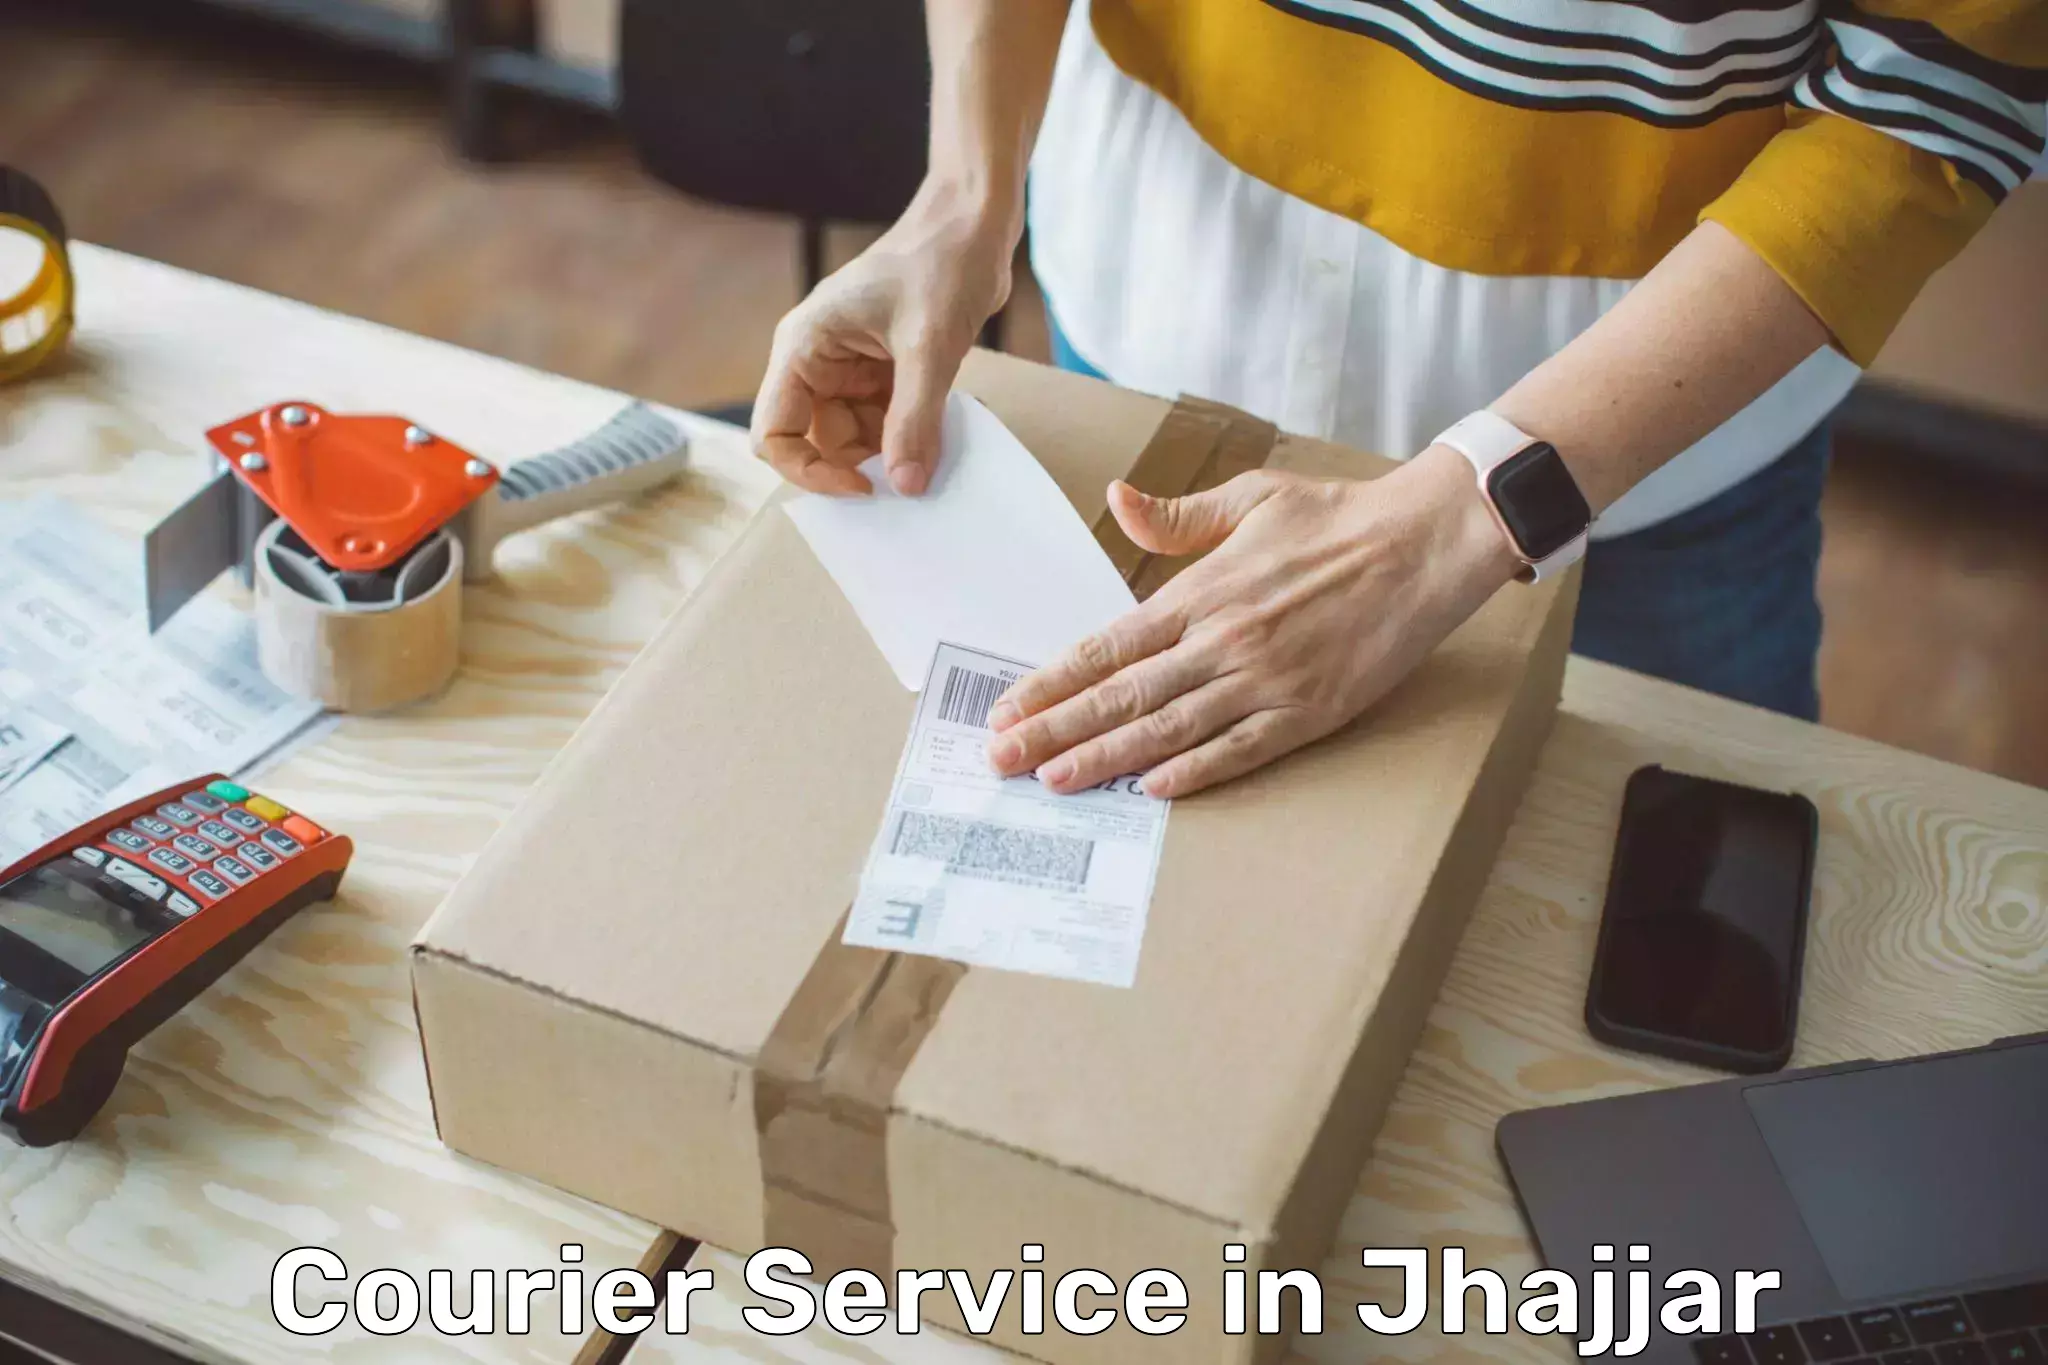 Express logistics providers in Jhajjar